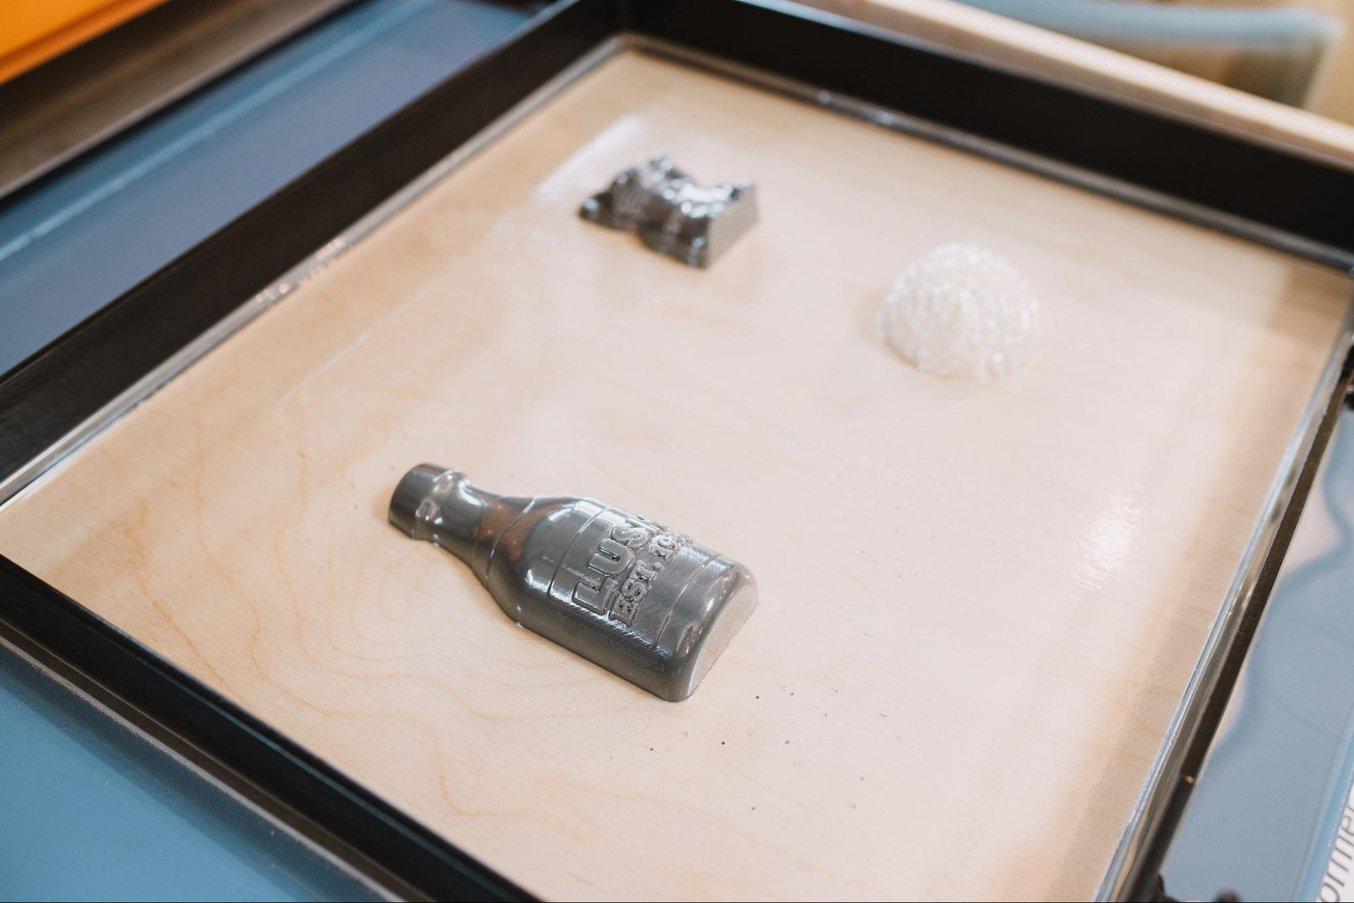 El fabricantes de cosméticos Lush usa moldes impresos en 3D para crear moldes de moldeo en vacío con diseños detallados y con texturas en menos de 24 horas.